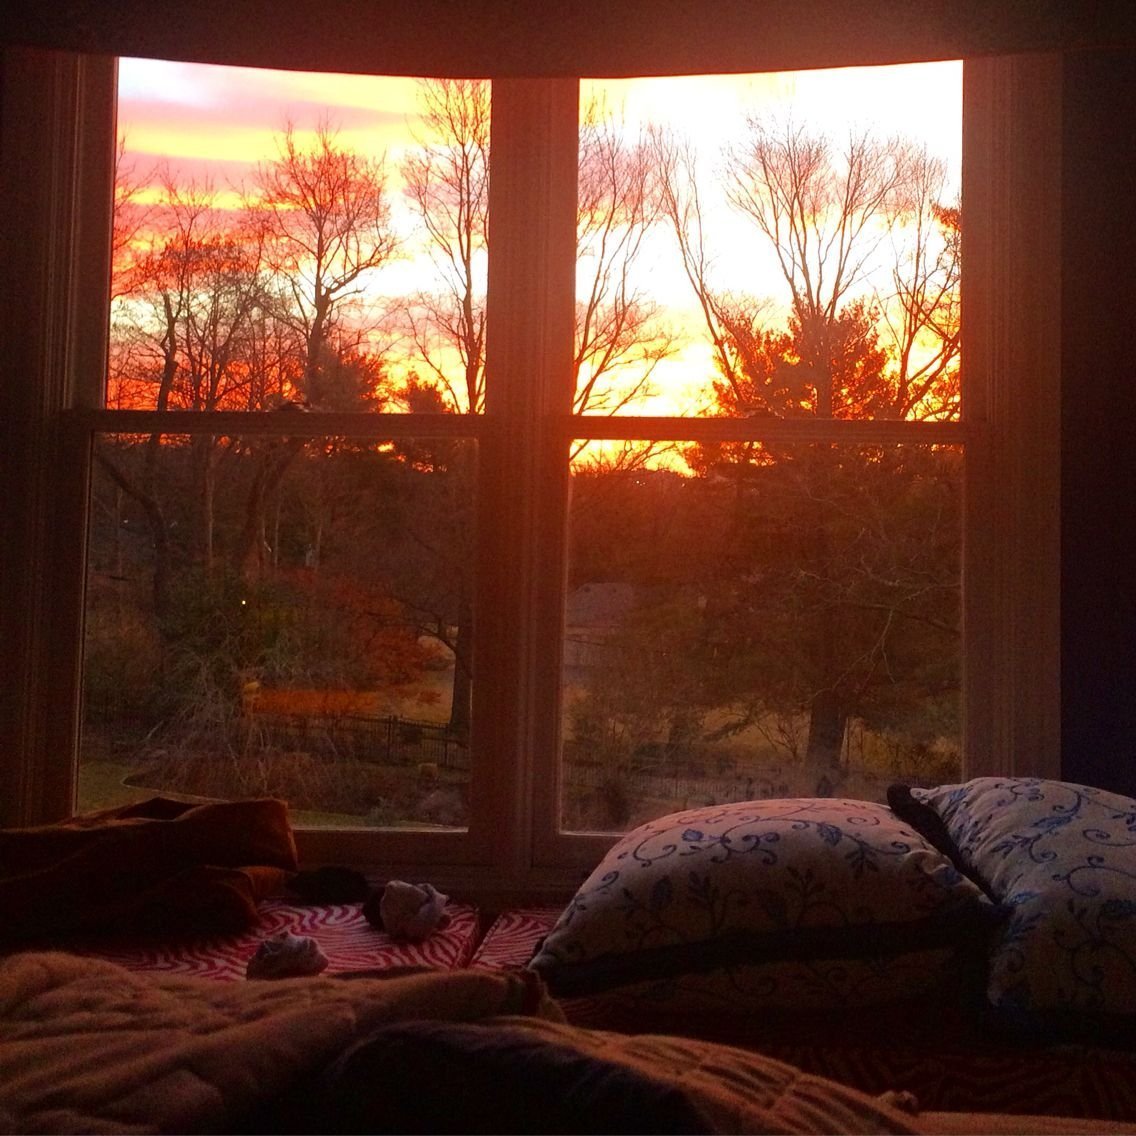 Вечер дом осень. Уютная комната. Уютная комнатка с окном. Комната с закатом в окне. Вид из окна рассвет.